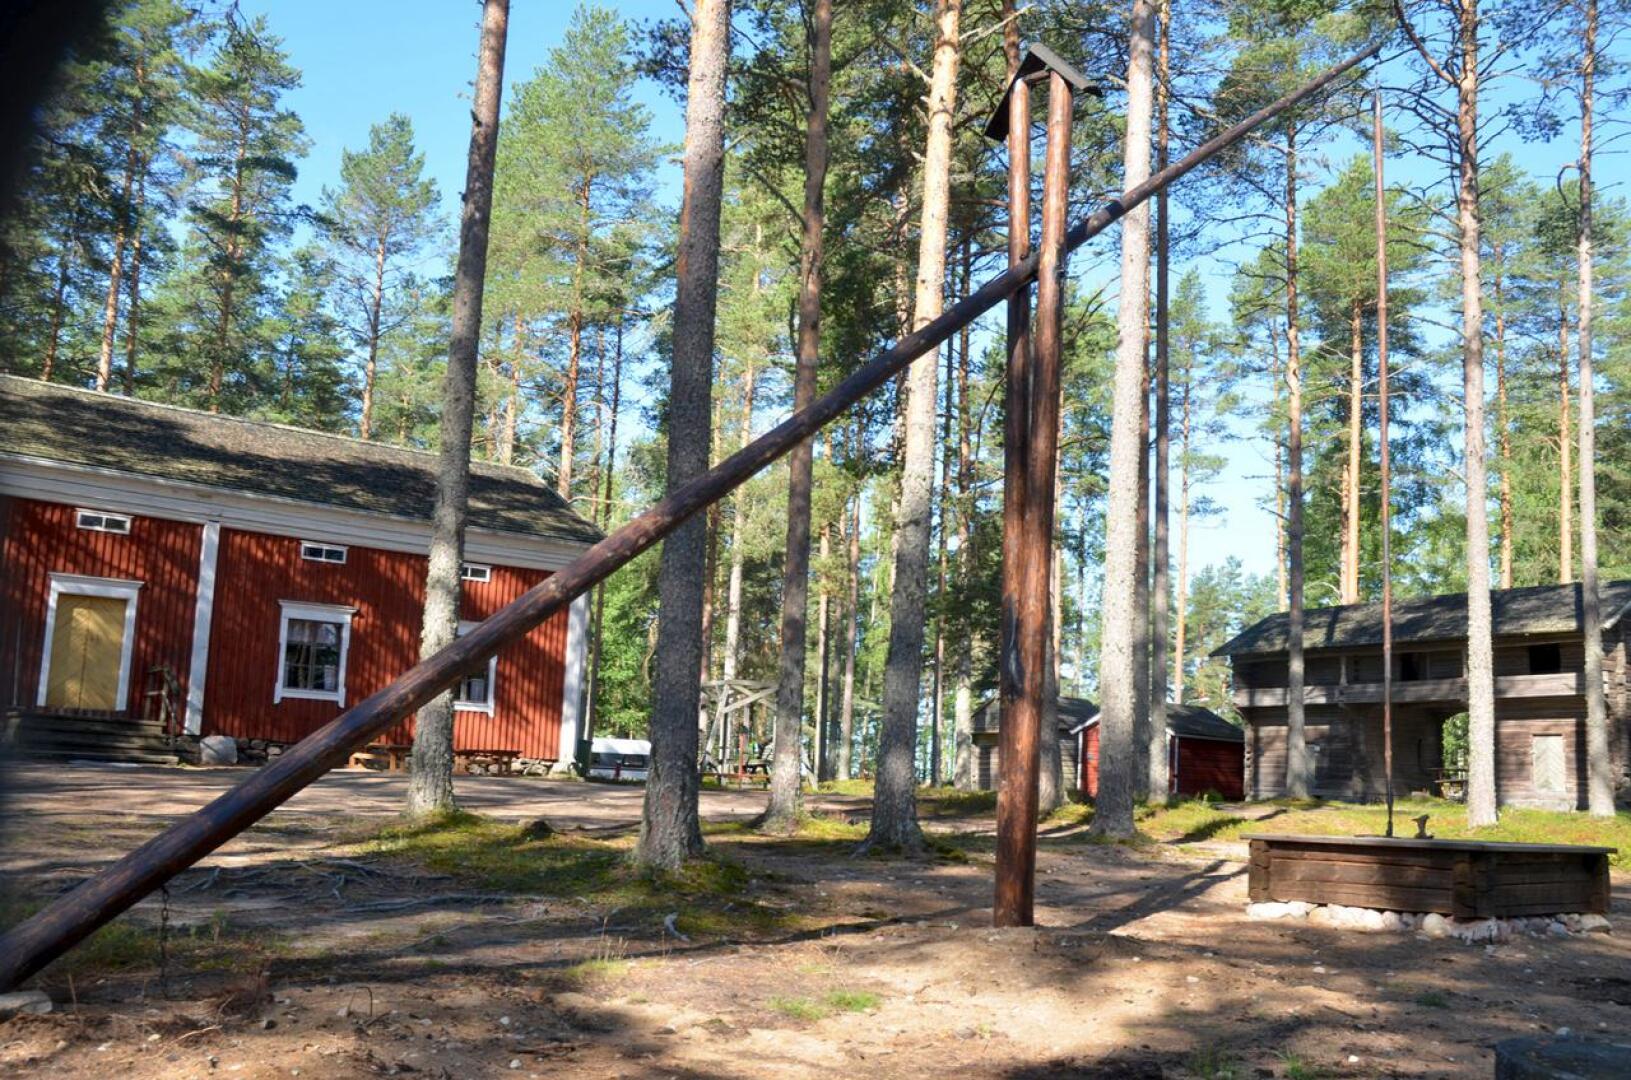 Komea siitä tuli. Vinttikaivo komeilee nyt Lestijärven museon pihamaalla.